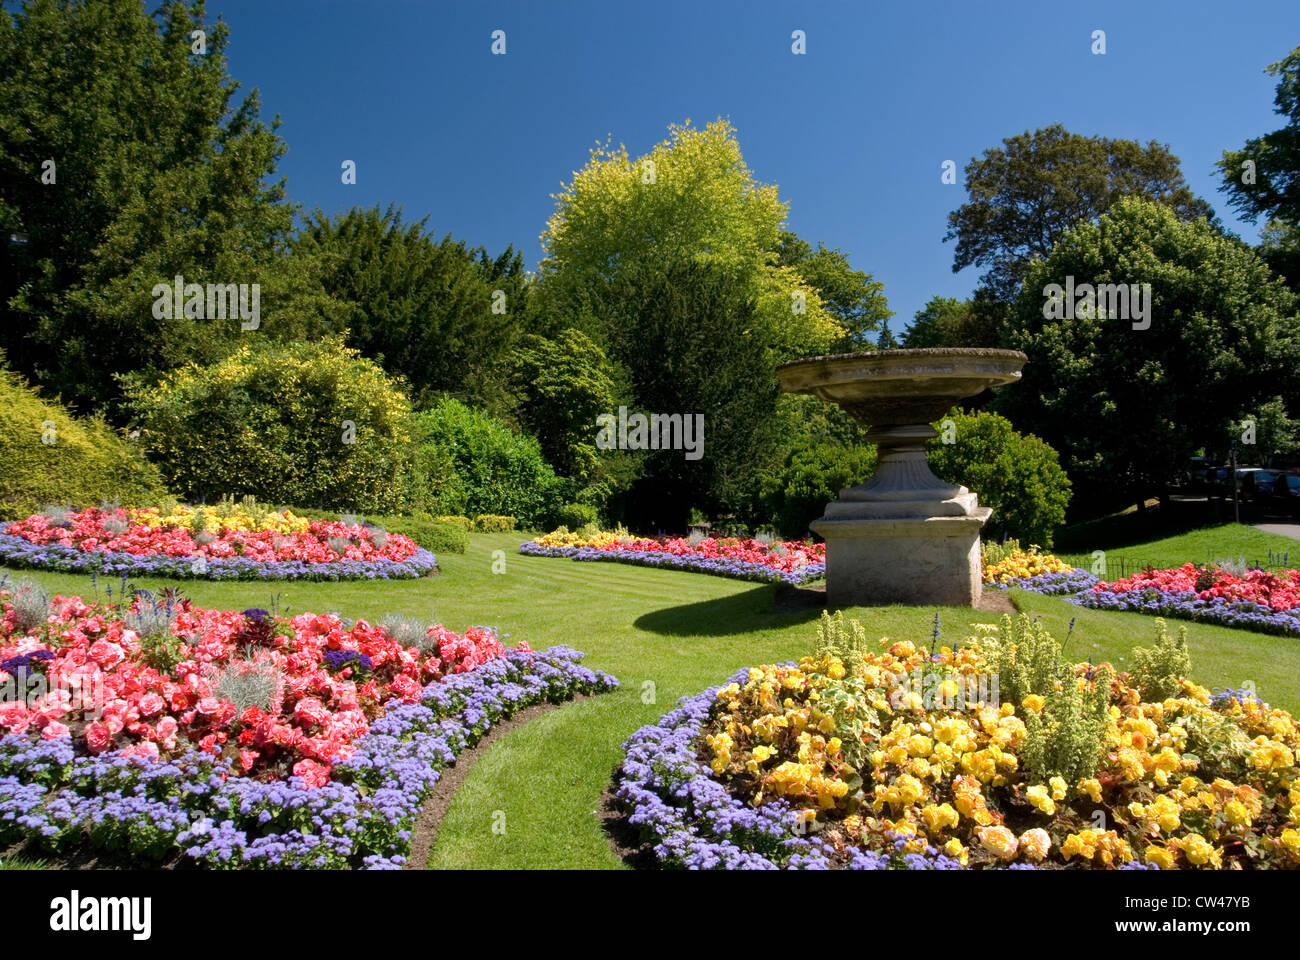 Blumenbeete, Royal Victoria Park, Badewanne, Somerset, England. Stockfoto